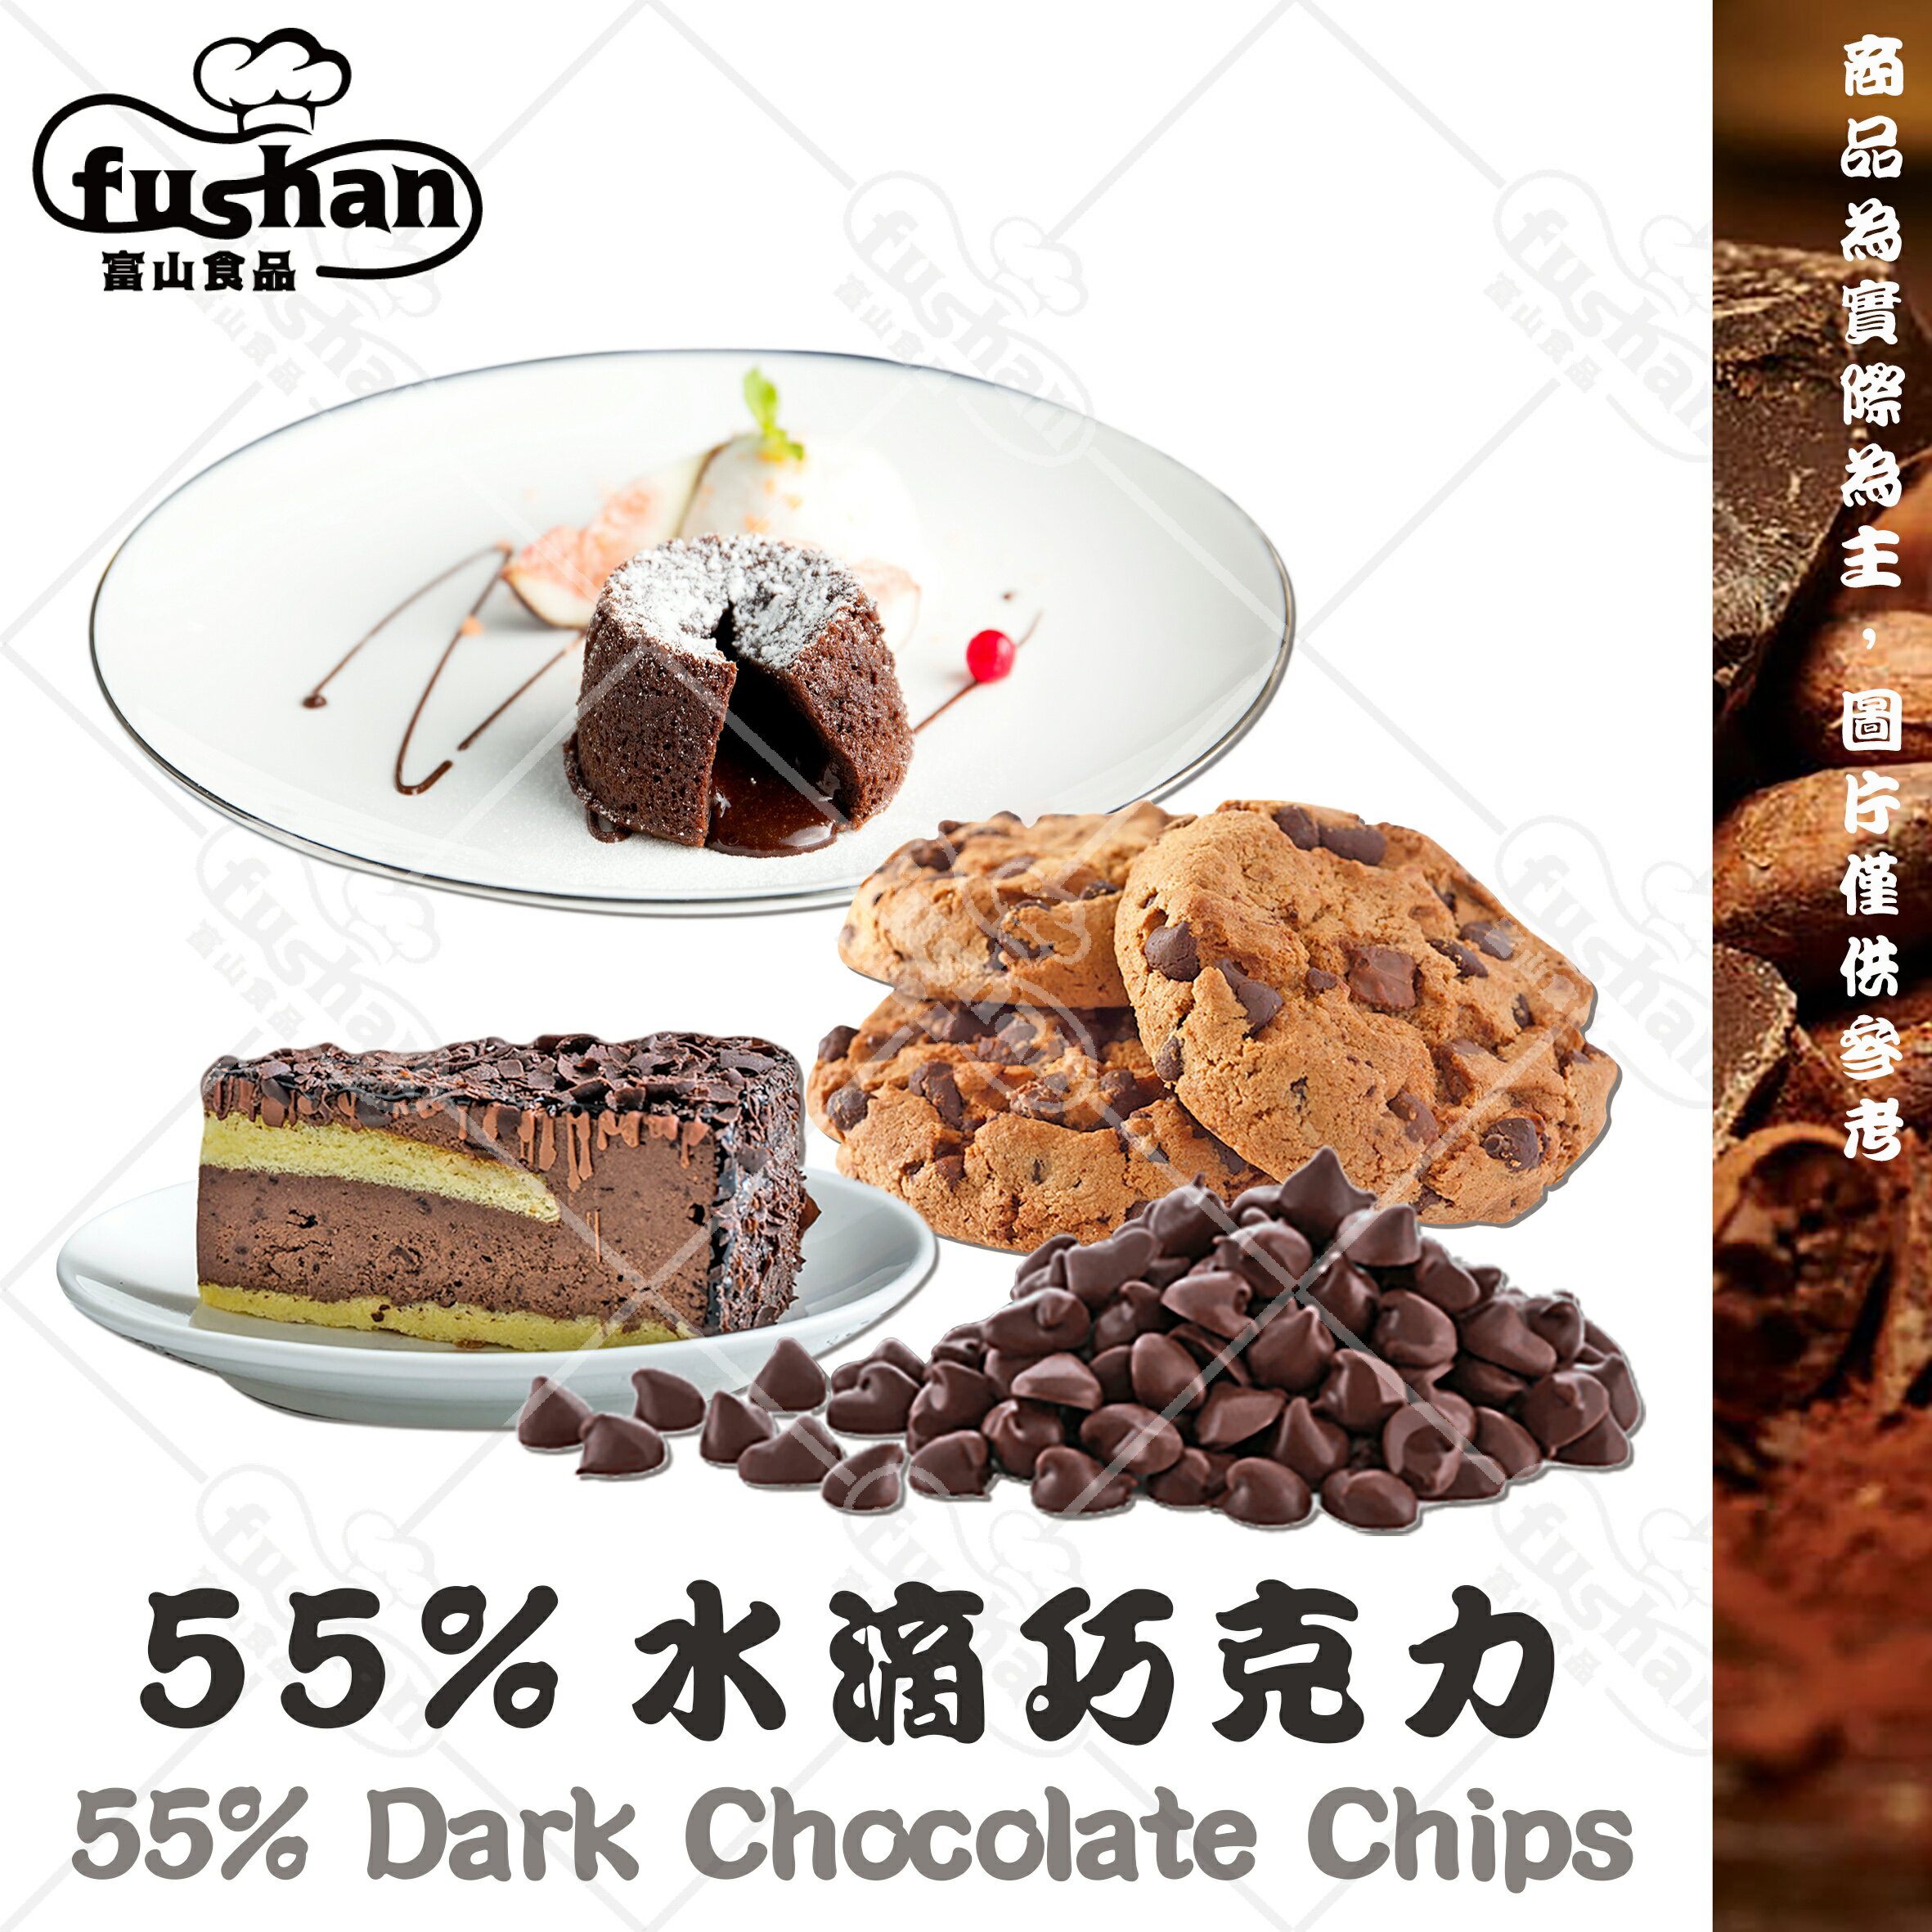 【富山食品】Weiss 55% 水滴巧克力 200G/罐 香氣濃厚 餘韻感十足 Dark Chocolate Chips